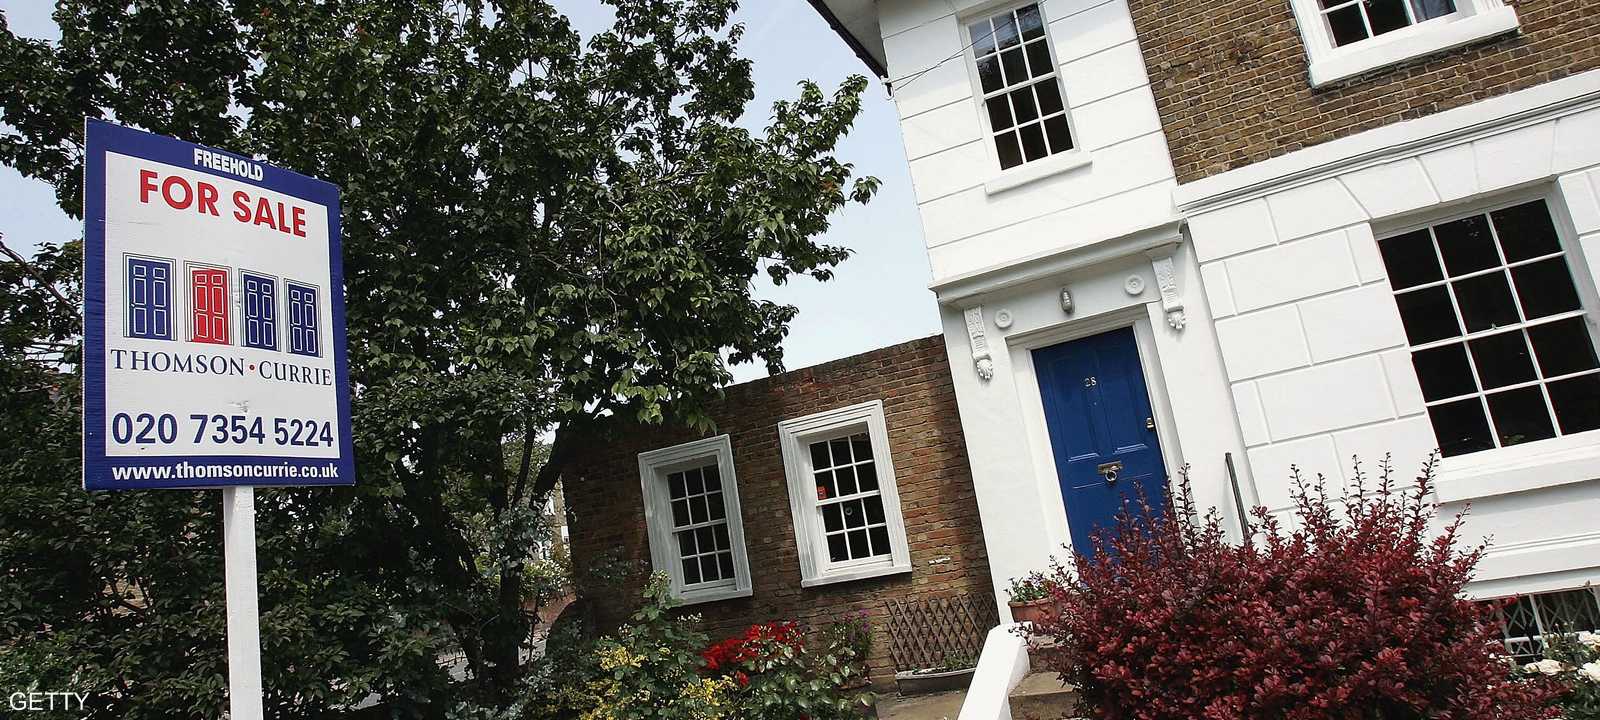 منزل في لندن للبيع